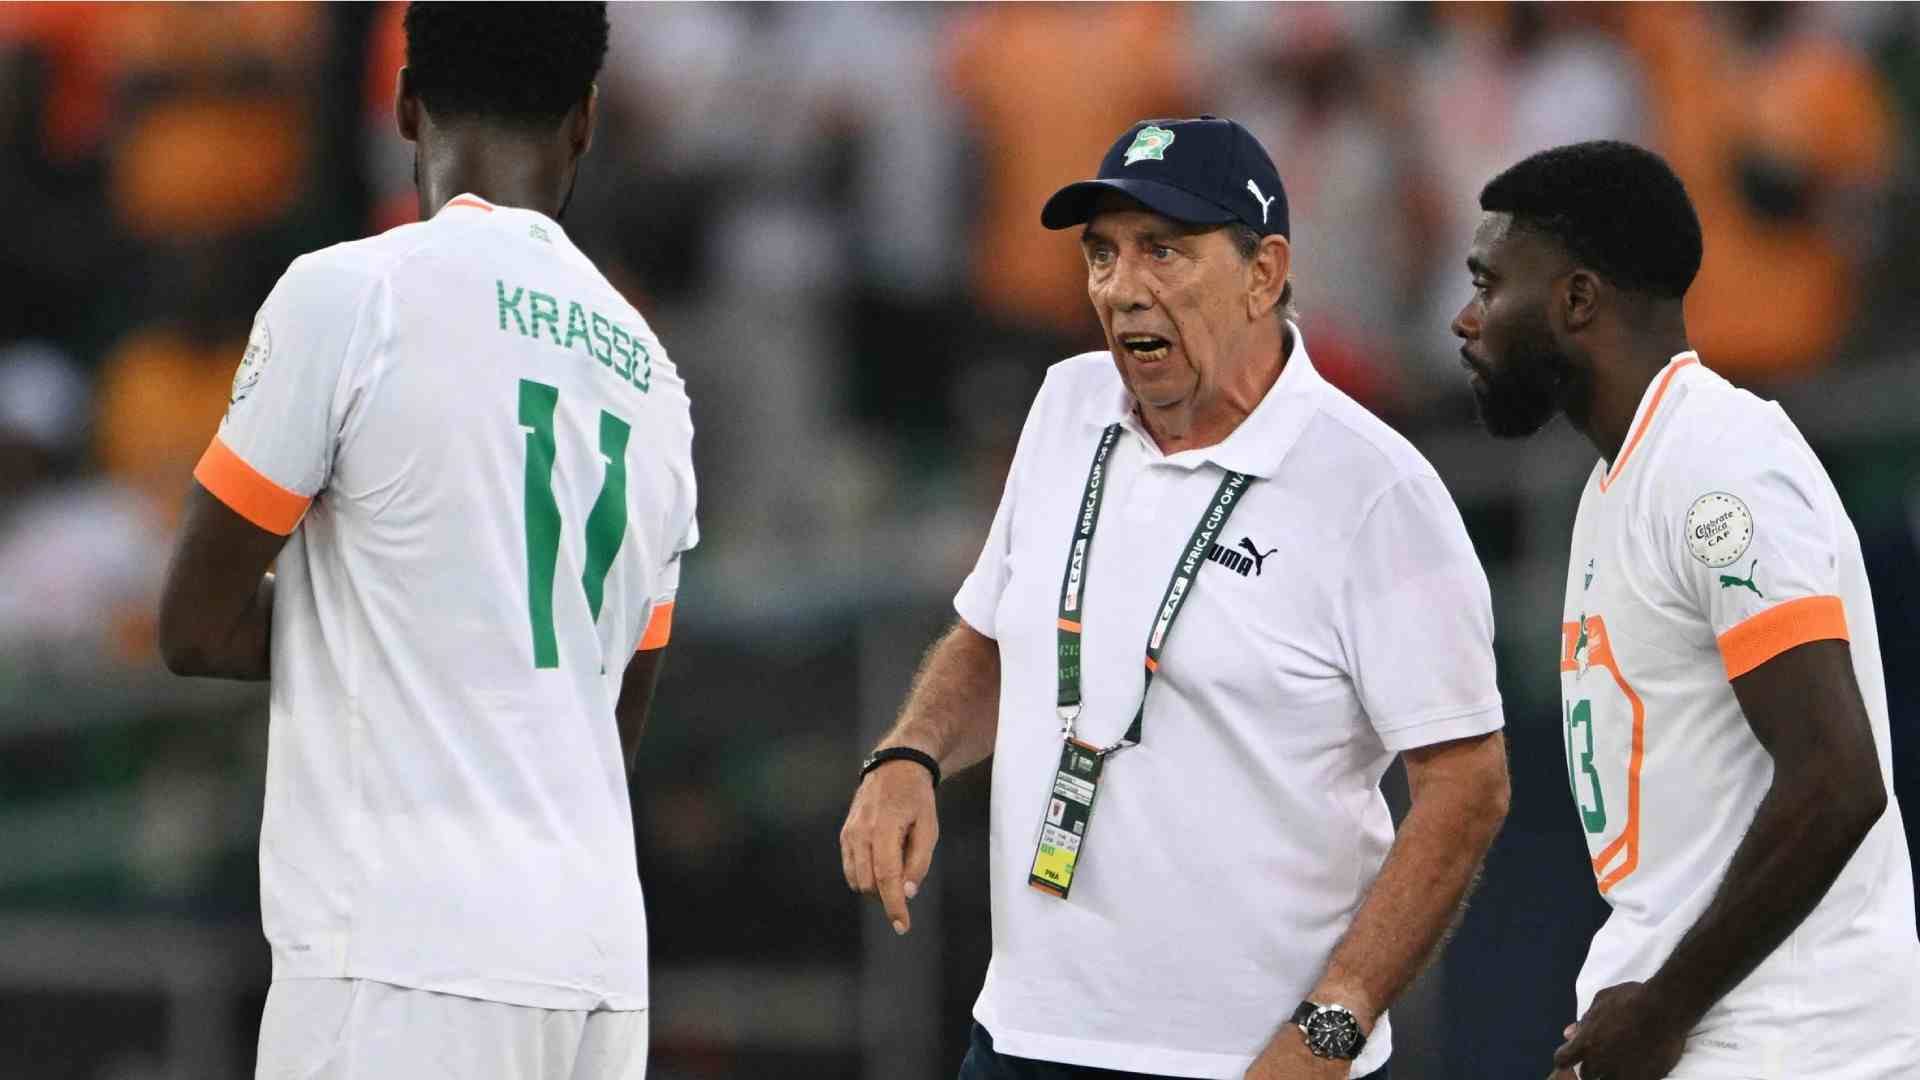 La Costa d'Avorio esonera il CT dopo la sconfitta, ma viene ripescata per gli ottavi di Coppa d'Africa